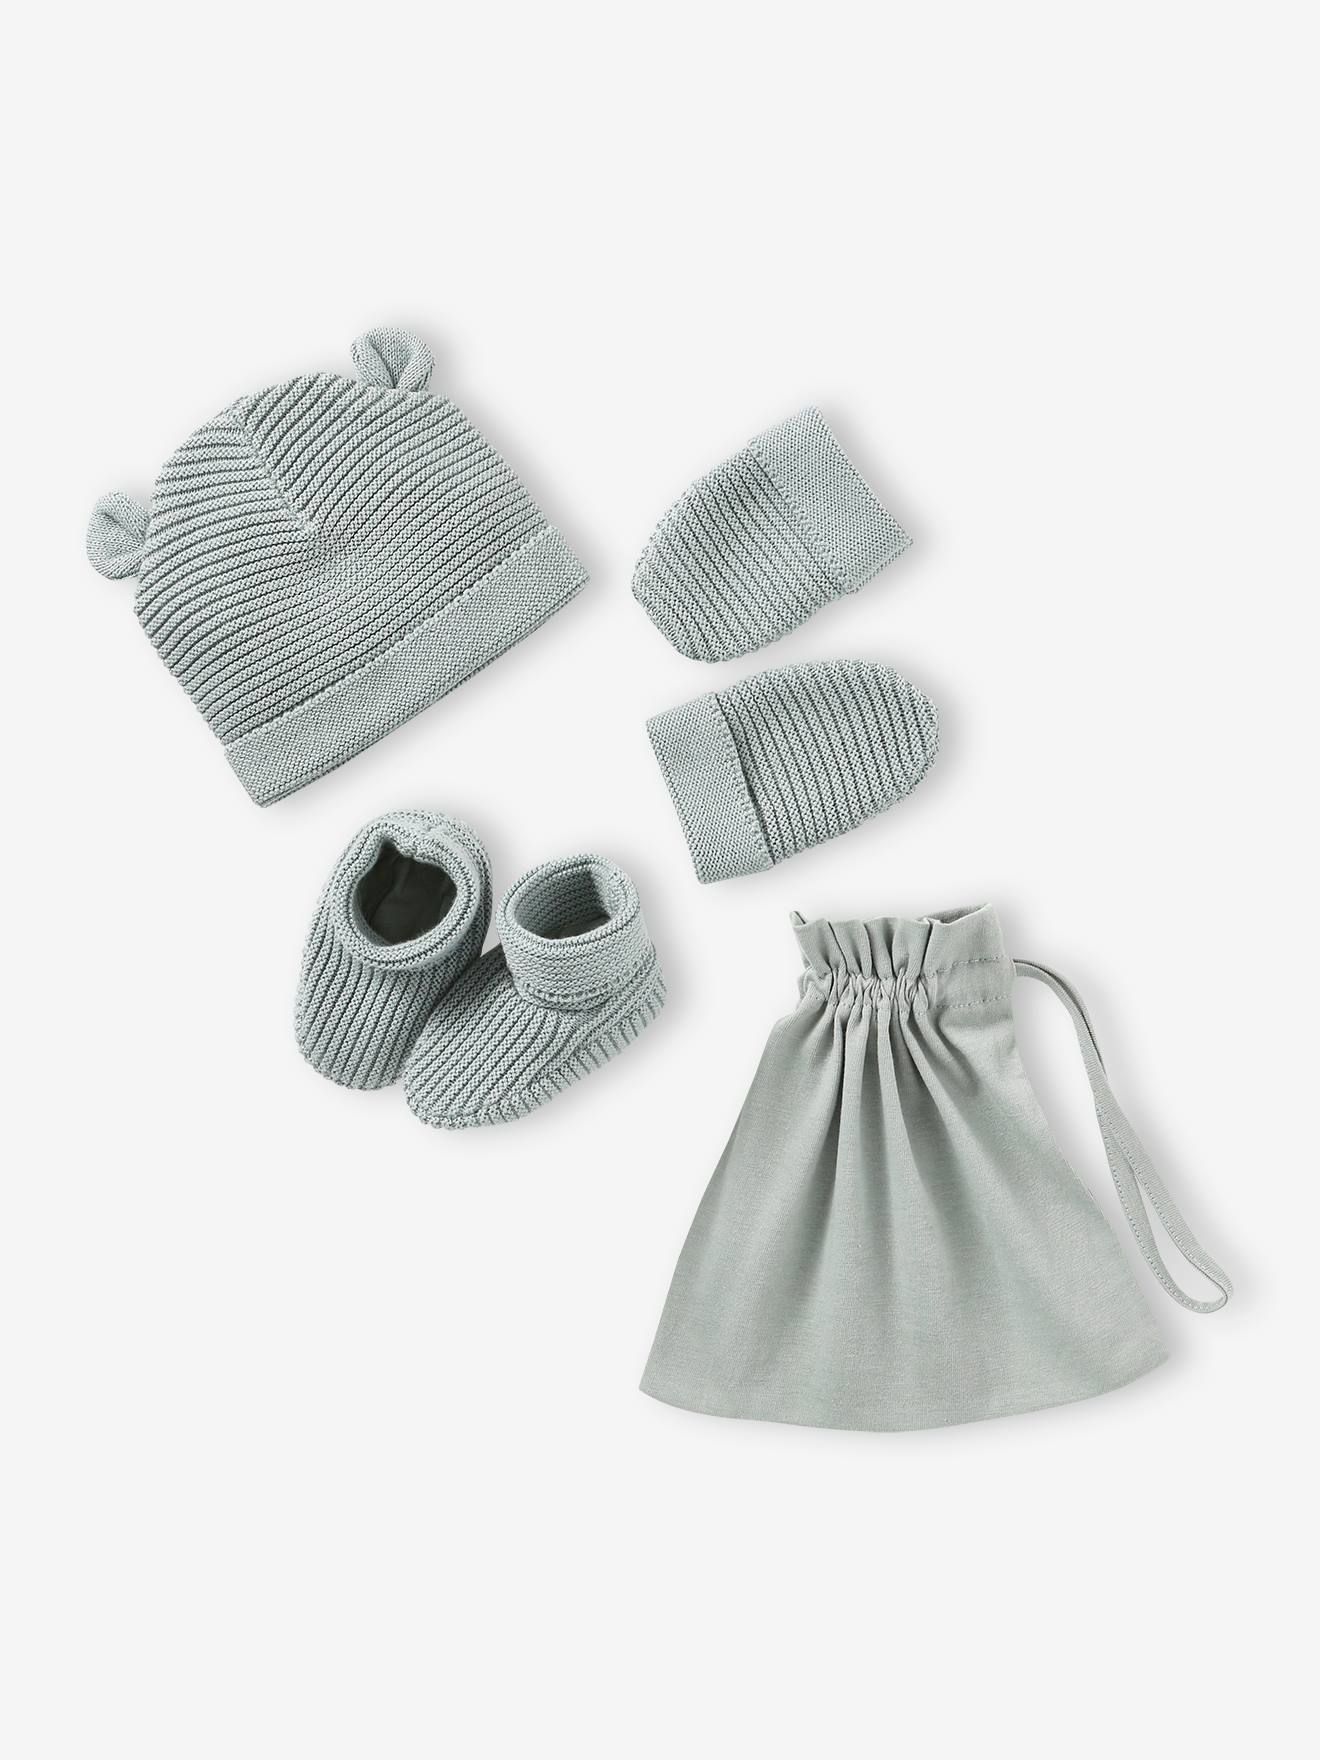 ensemble bonnet, moufles et chaussons bébé naissance et son sac assorti bleu grisé